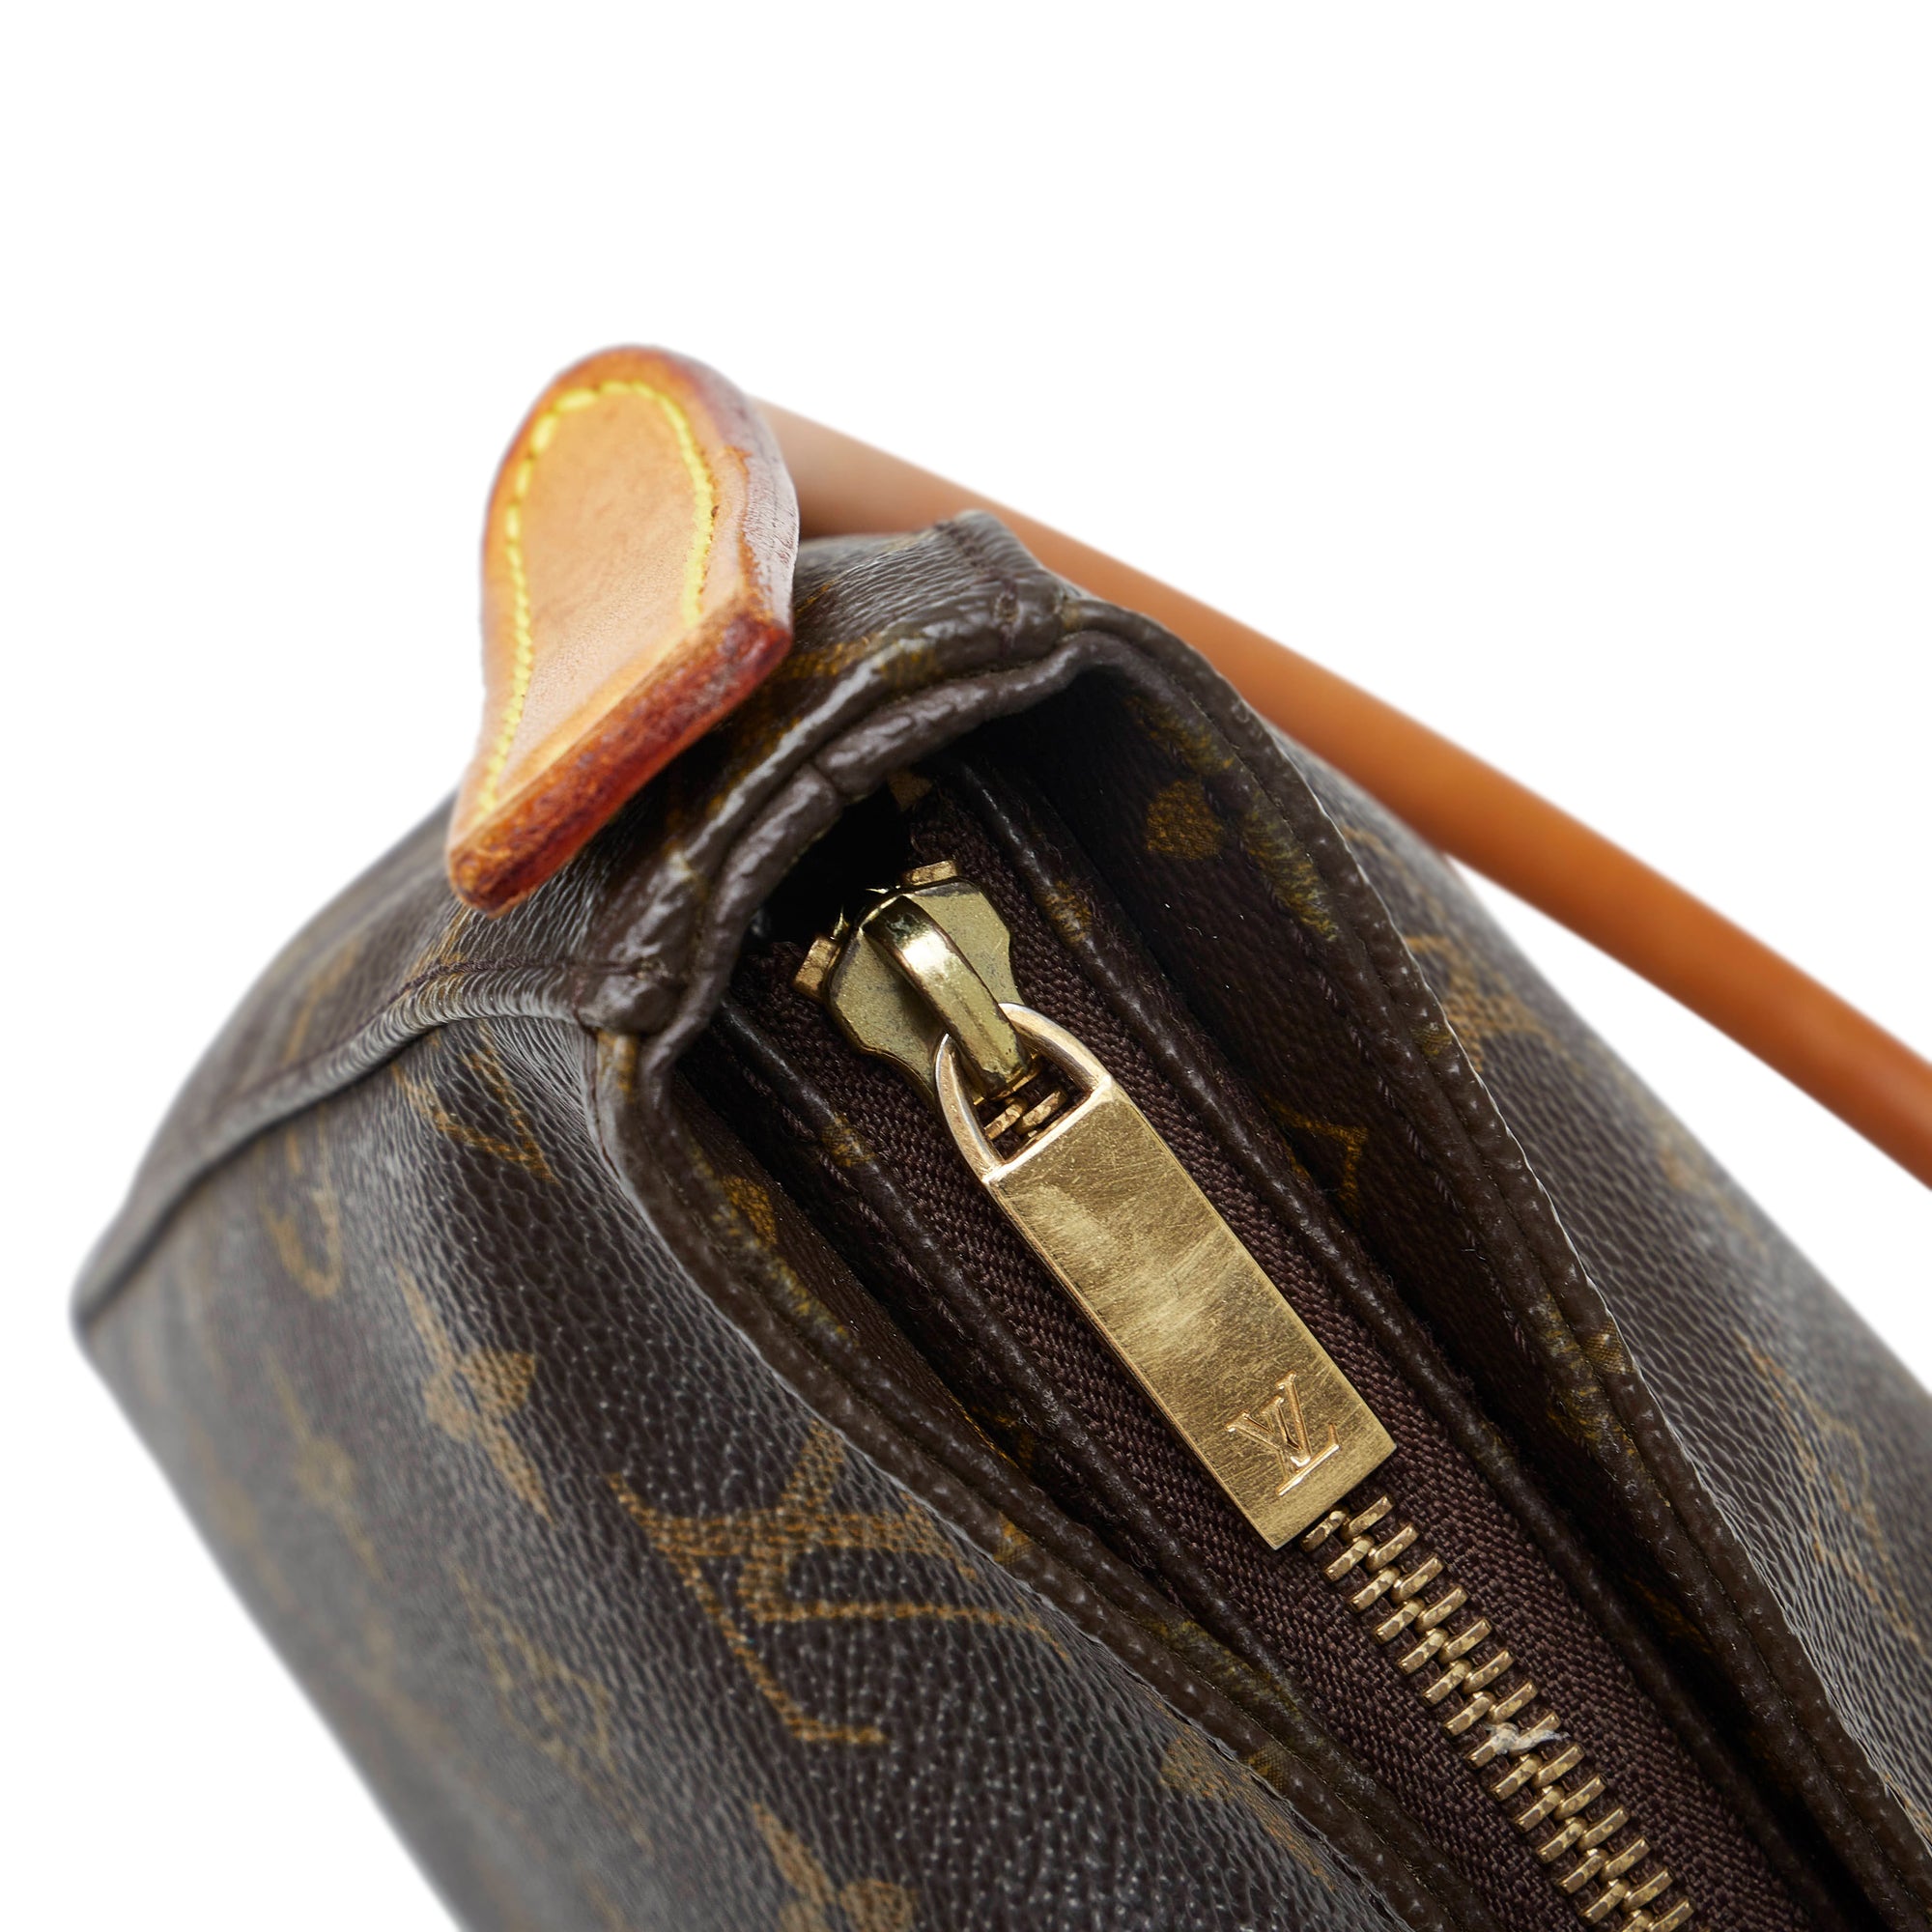 Pre-owned Louis Vuitton Monogram Looping MM Shoulder Bag